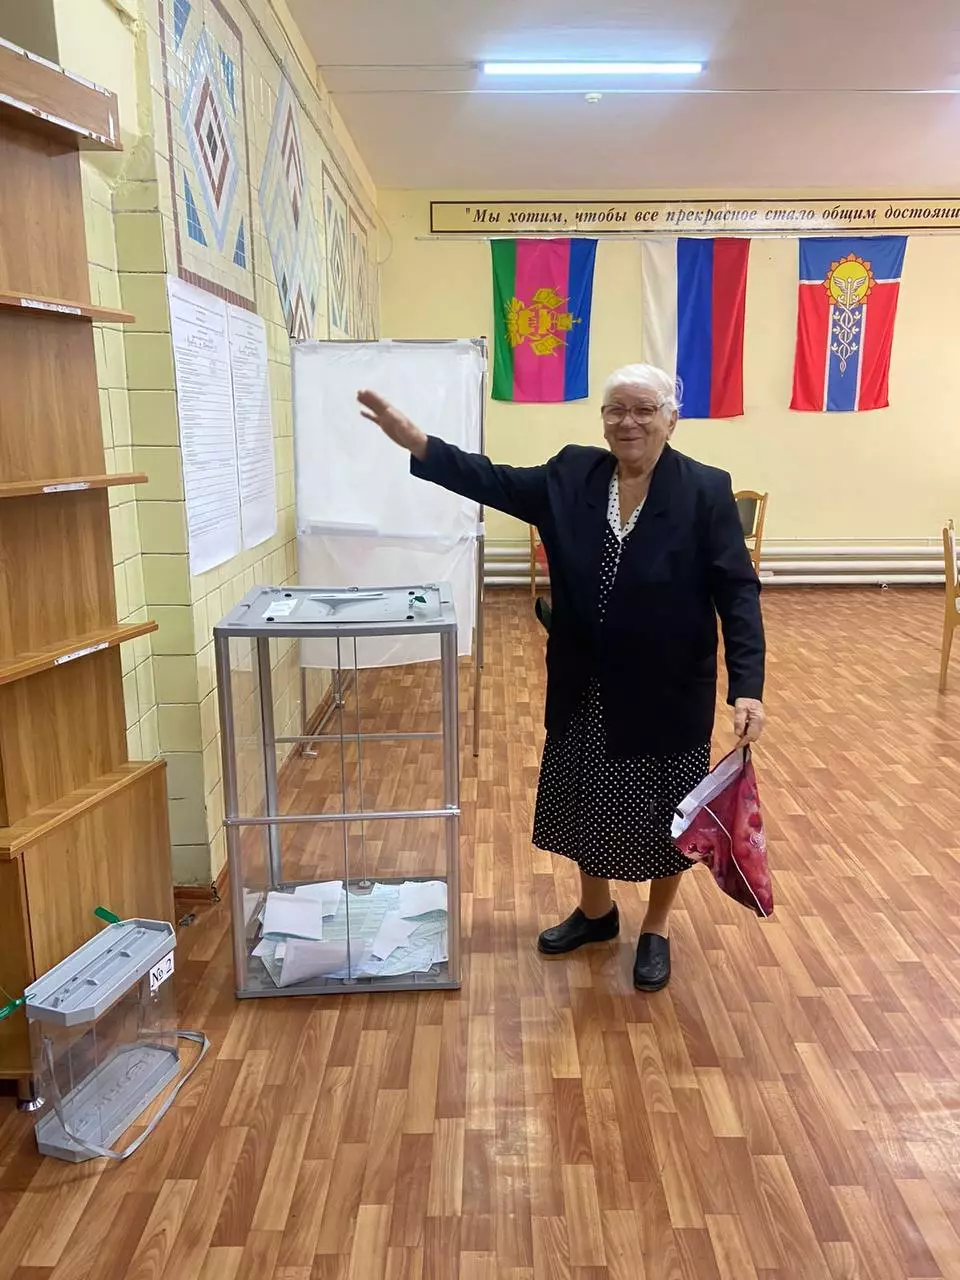 Вчера Надежде Ивановне Головковой исполнилось 87 лет. А сегодня она пришла на выборы